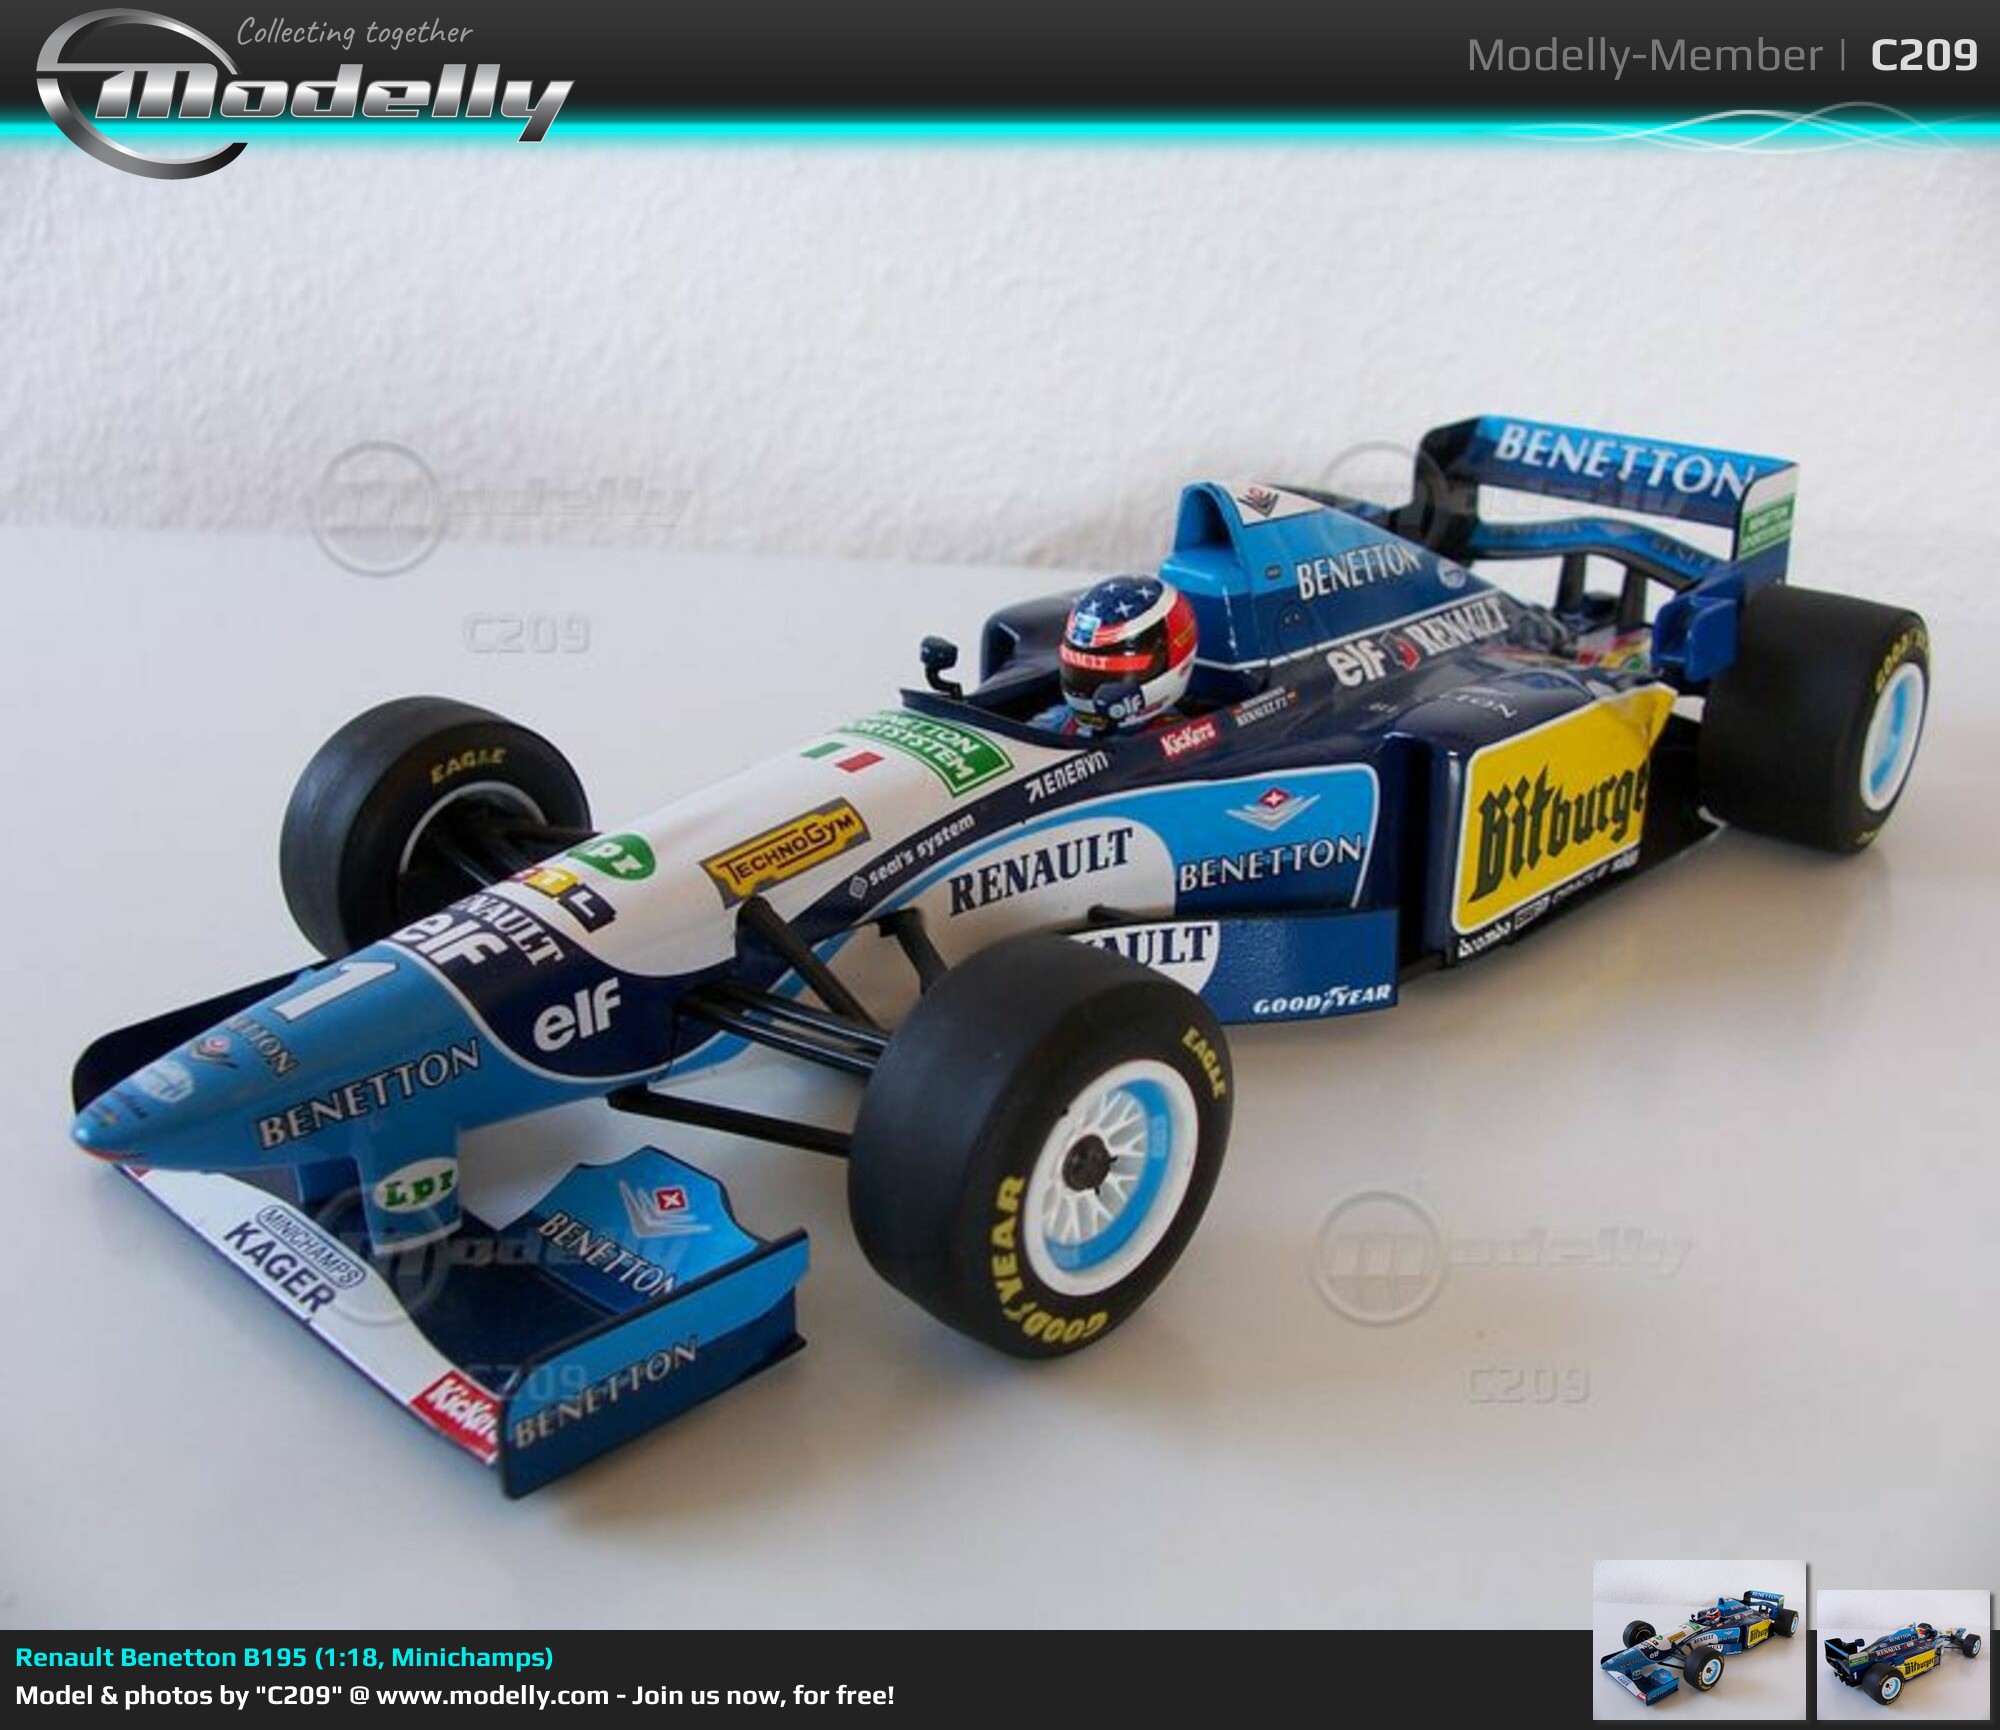 Renault Benetton B195, Minichamps 1:18 modelcar in racing 